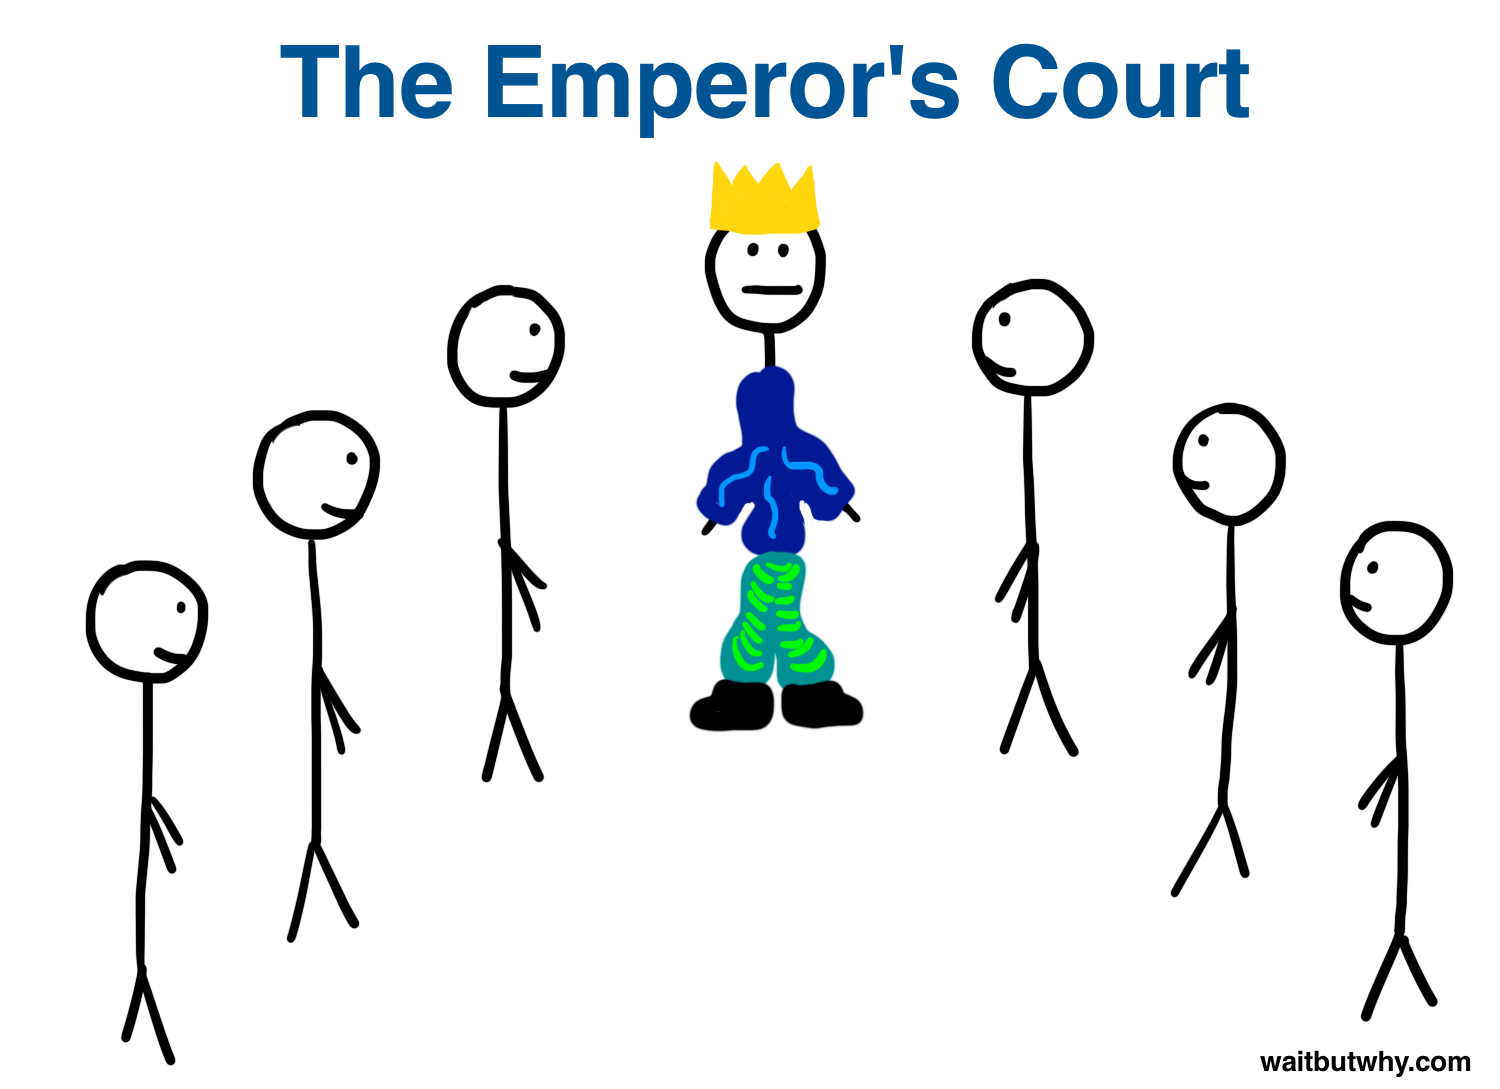 Emperor 1